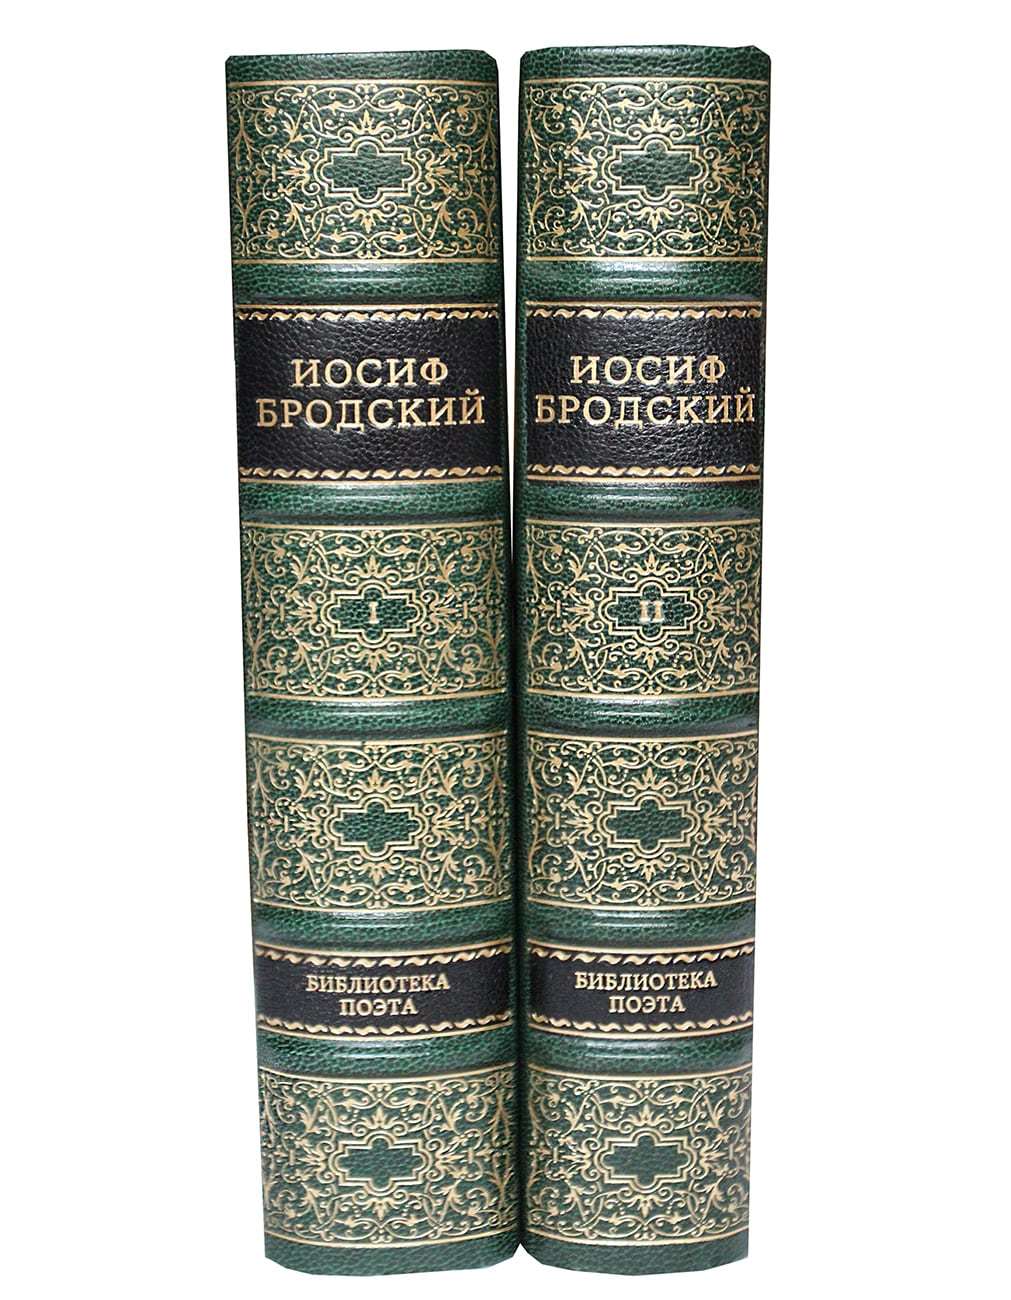 Бродский И.А. Стихотворения и поэмы в 2 томах